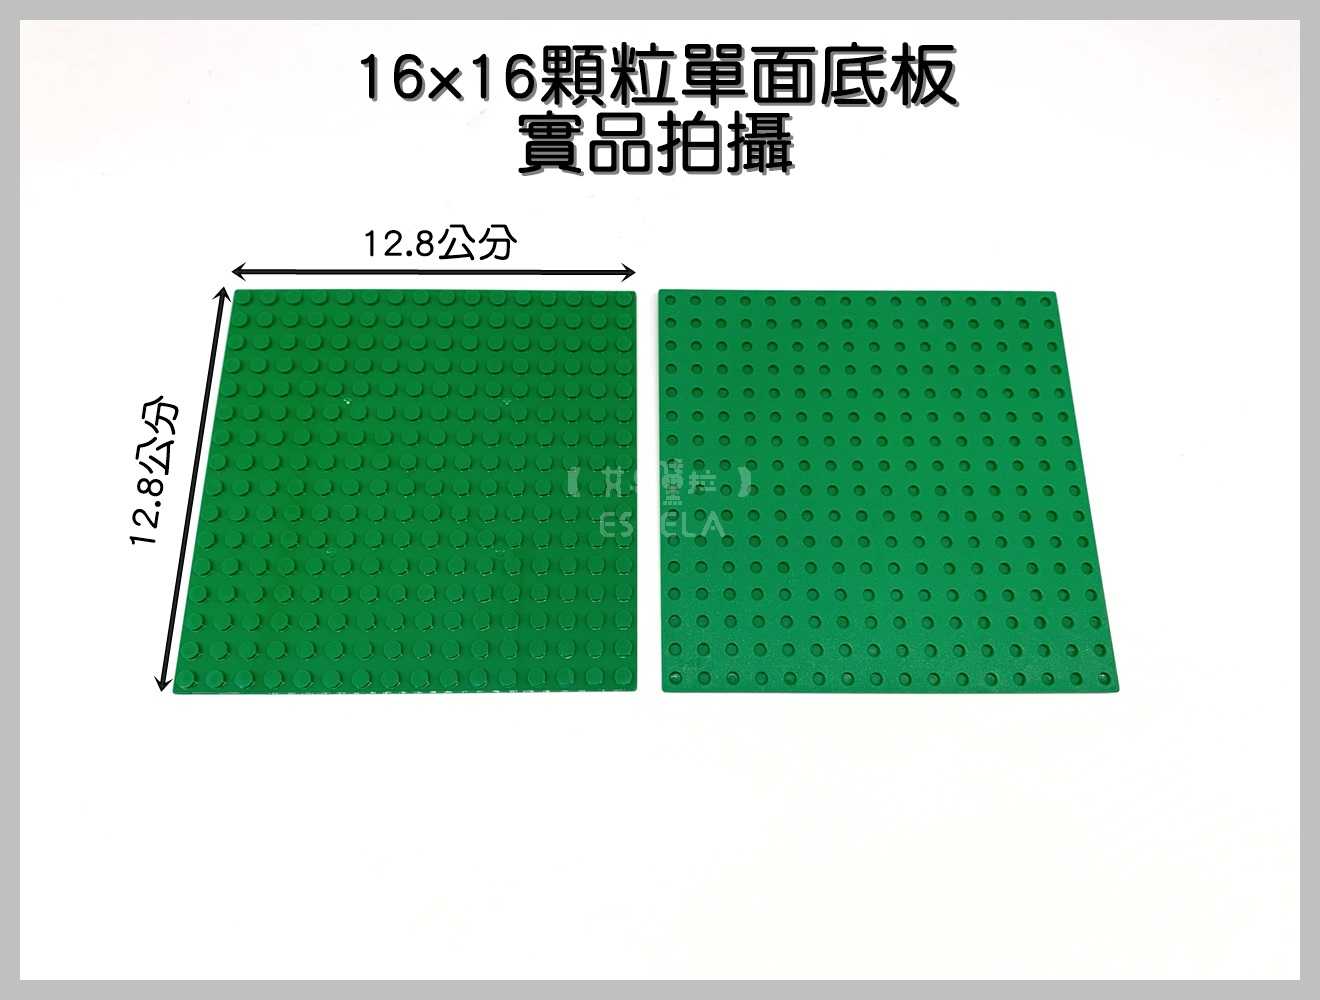 【艾思黛拉A0720】副廠 相容樂高 小顆粒 單面底板 16*16顆粒 7款可選 12.8x12.8公分 積木 LEGO